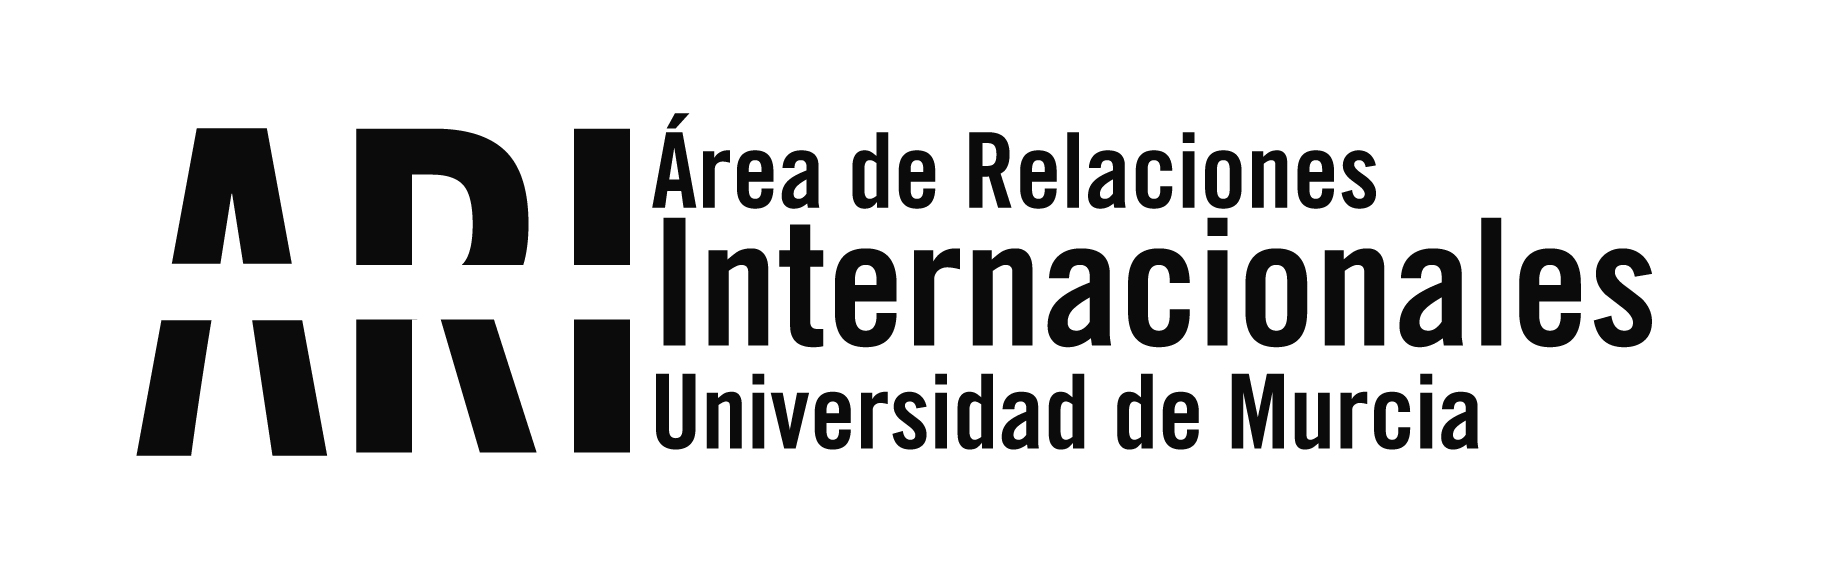 BUMI18 Bienvenida Universidad de Murcia Internacional 2018-19 - Área de Relaciones Internacionales